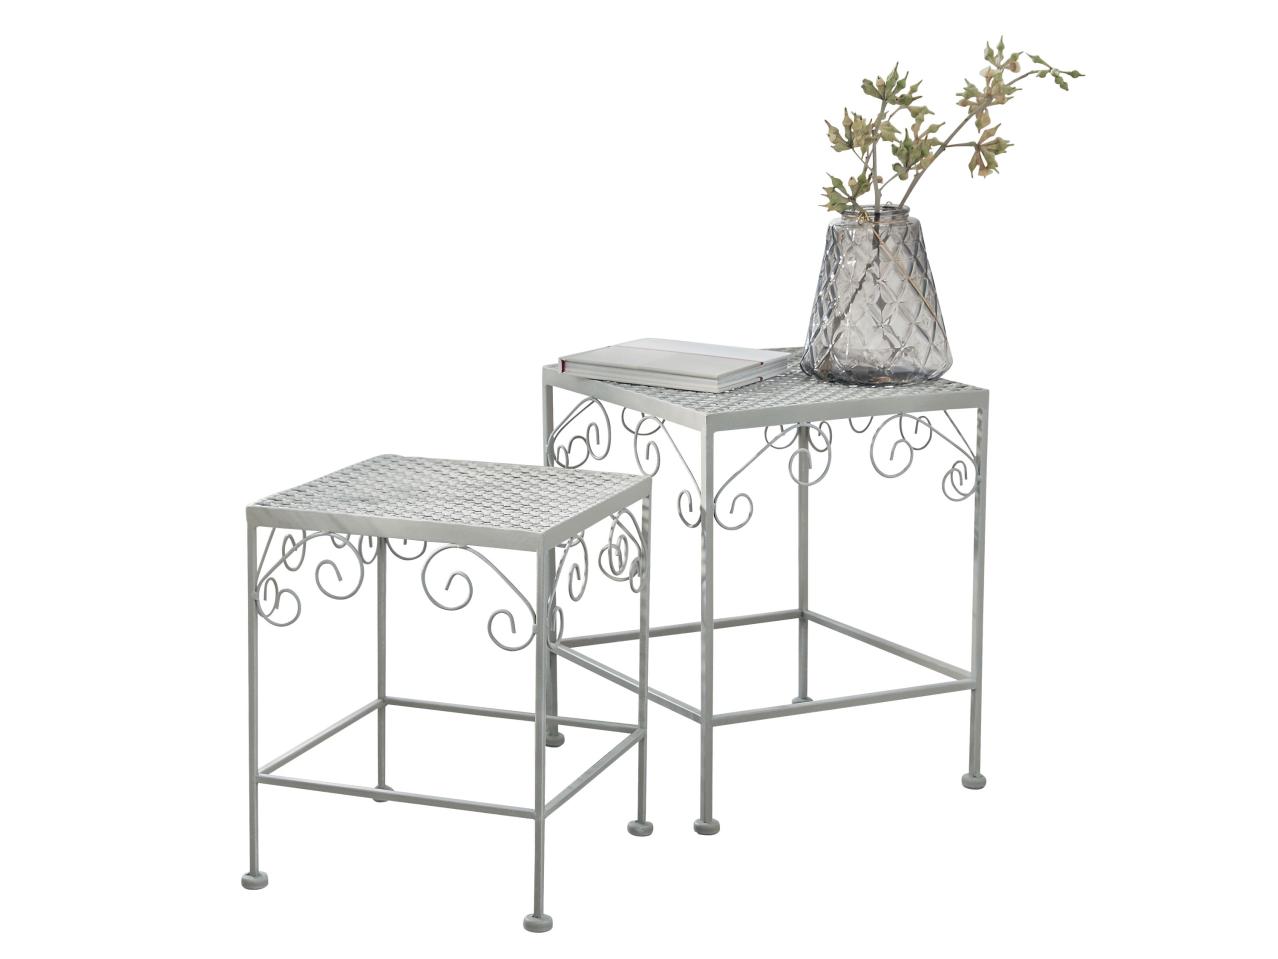 2 tables d'appoint ou étagères d'angle en métal